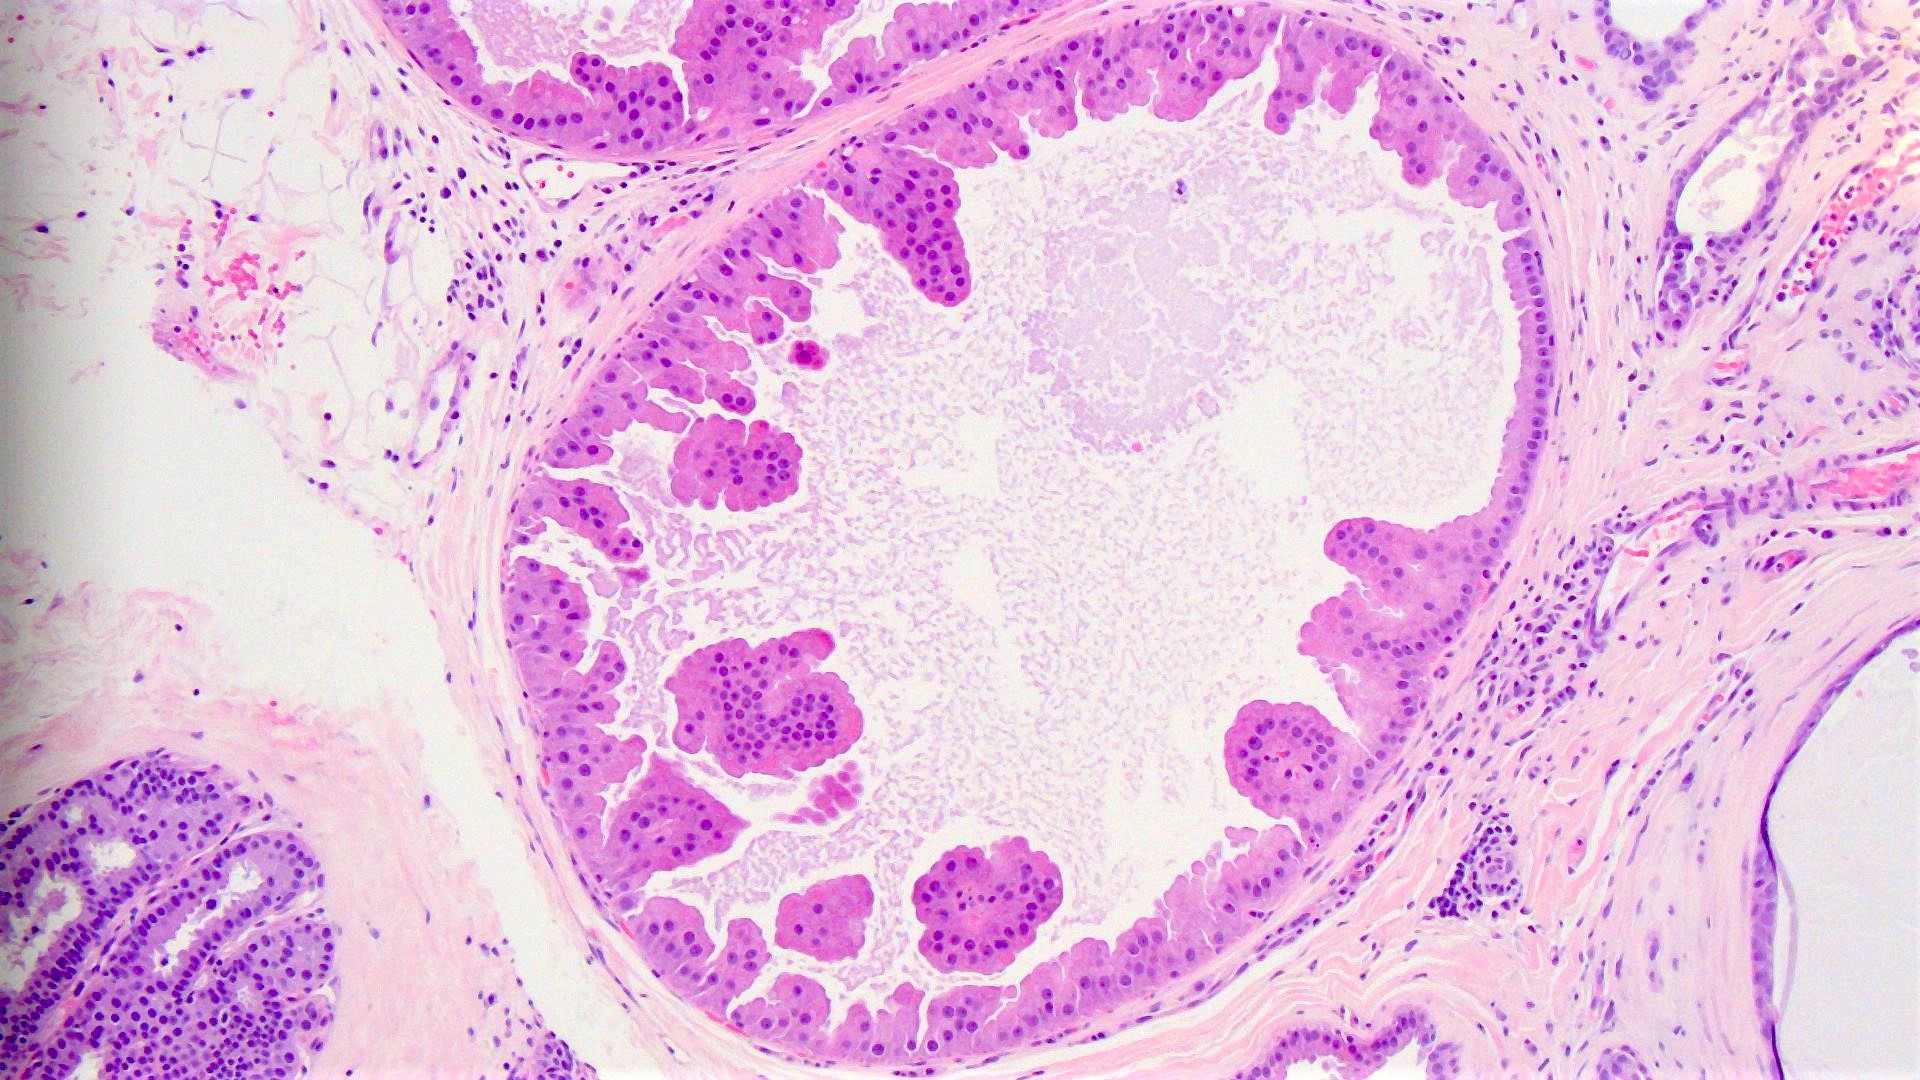 papilloma with apocrine metaplasia